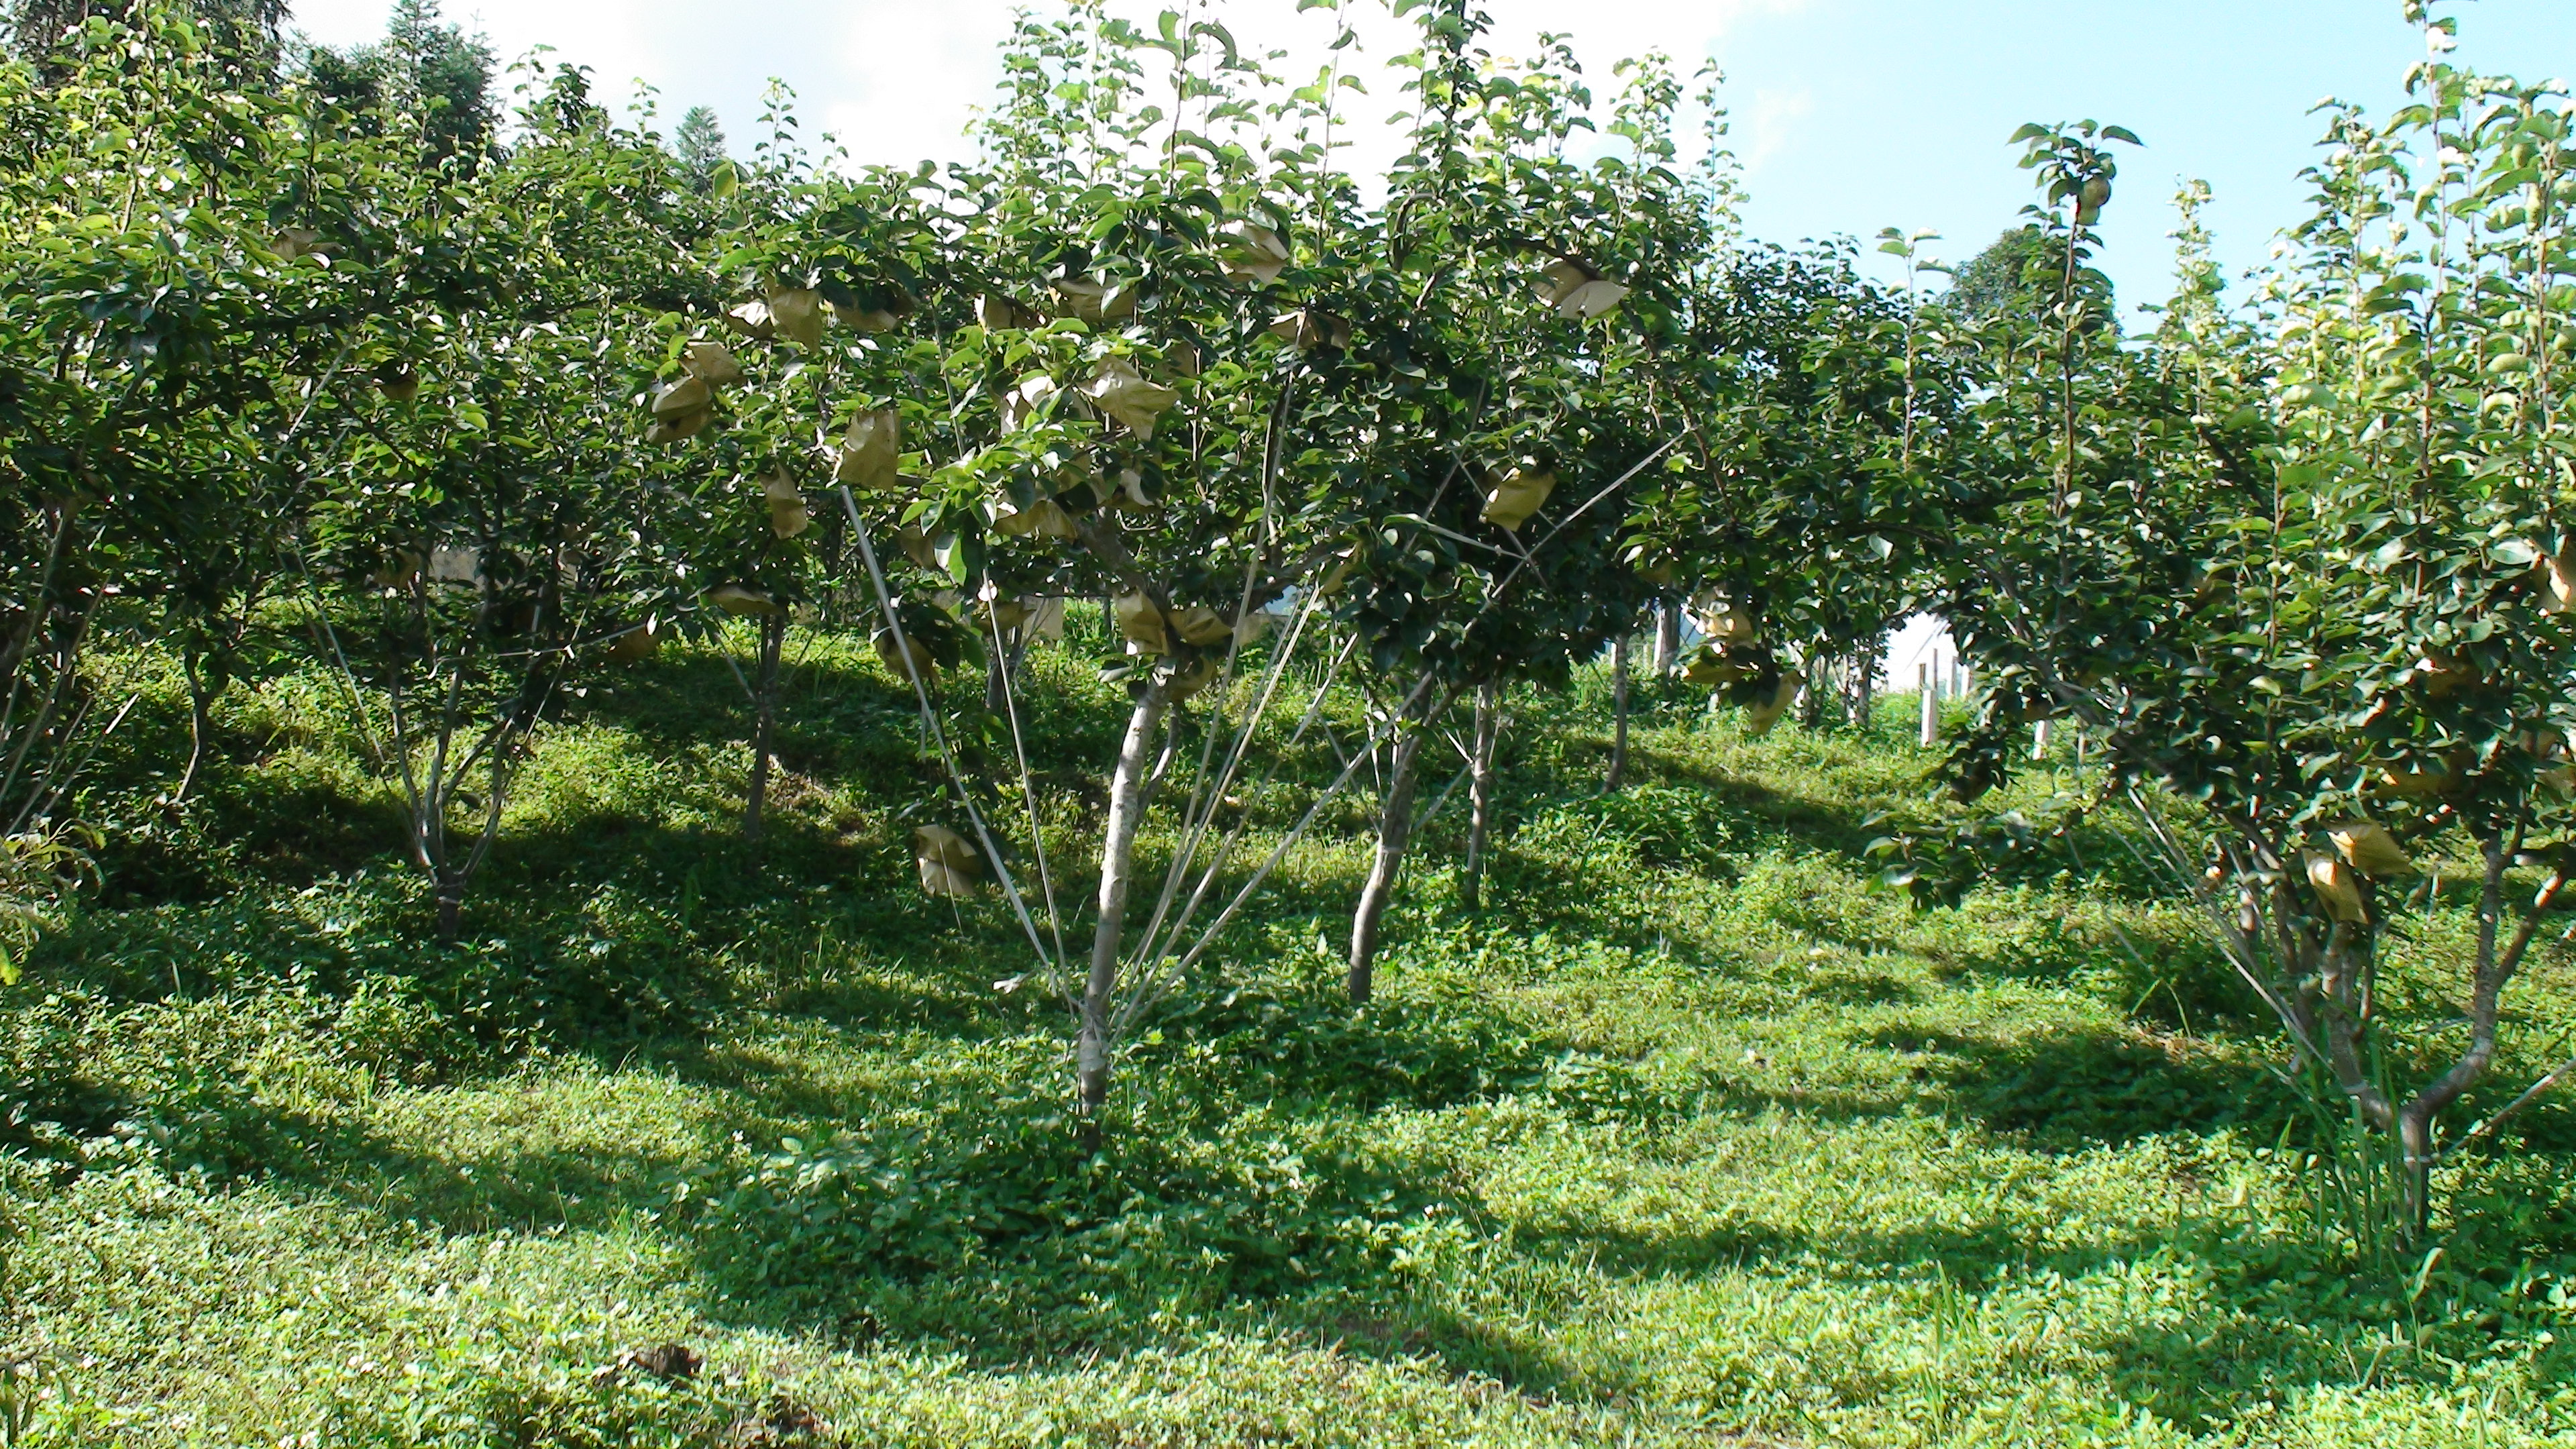 Trung tâm Giống Nông nghiệp tỉnh Lào Cai sản xuất cây giống ăn quả ôn đới  Thực hiện kế hoạch của Trung tâm Giống Nông nghiệp Lào Cai về việc sản xuất và cung ứng giống cây ăn quả ôn đới chất lượng cao năm 2019, ngay từ đầu năm Trung tâm đã chỉ đạo Trại nghiên cứu và sản xuất rau quả Bắc Hà chuẩn bị mọi điều kiện để sản xuất cây giống nhằm đảm bảo số lượng cũng như chất lượng. 	  Vườn cây Lê đầu dòng tại Trại nghiên cứu và sản xuất rau quả Bắc Hà  Năm 2019, Trại Bắc Hà được giao thực hiện sản xuất trên 20 vạn cây giống cây ăn quả ôn đới, gồm 10 vạn cây lê; 4 vạn cây đào; 7 vạn cây mận và 1 vạn cây hồng. Phương pháp nhân giống là ghép cành, cây gốc ghép là cây những loại cây bản địa sinh trưởng khỏe, thích nghi với điều kiện sinh thái vùng cao như gốc mắc cọoc lê, gốc đào chua...  Hiện tại Trại đang tập trung ra ngôi và chăm sóc cây gốc ghép, nhờ có khí hậu ấm, mưa ẩm nên cây gốc ghép sau trồng đạt tỷ lệ sống cao trên 95%. Hàng năm, việc gieo trồng cây gốc ghép thực hiện trong tháng 1 và 2 dương lịch, đến tháng 7,8 tiến hành ghép cây và đến tháng 11,12 cây đã đủ tiêu chuẩn xuất vườn. Cùng với việc gieo trồng cây gốc ghép thì Trại cũng quan tâm chăm sóc tốt các vườn cây đầu dòng ngay từ đầu năm nhằm khai thác tối đa mắt ghép để nhân giống.    	 Cán bộ Trại Bắc Hà kiểm tra sâu bệnh hại cây gốc ghép  	Nhằm phục vụ nhu cầu ngày càng cao về chất lượng cây giống, Trung tâm đã chỉ đạo Trại nghiên cứu và sản xuất rau quả Bắc Hà luôn tuân thủ nghiêm ngặt các quy định của cơ quan quản lý nhà nước về cây giống sản xuất, từ khâu lựa chọn gốc ghép, chăm sóc vườn cây đầu dòng, khai thác mắt ghép đảm bảo chất lượng. Trung tâm Giống Nông nghiệp đều định kỳ báo cáo Chi cục Trồng trọt và BVTV để kiểm tra, sau khi nghiệm thu tiêu chuẩn chất lượng cây giống đảm bảo quy định mới xuất vườn cung ứng cho bà con nông dân.